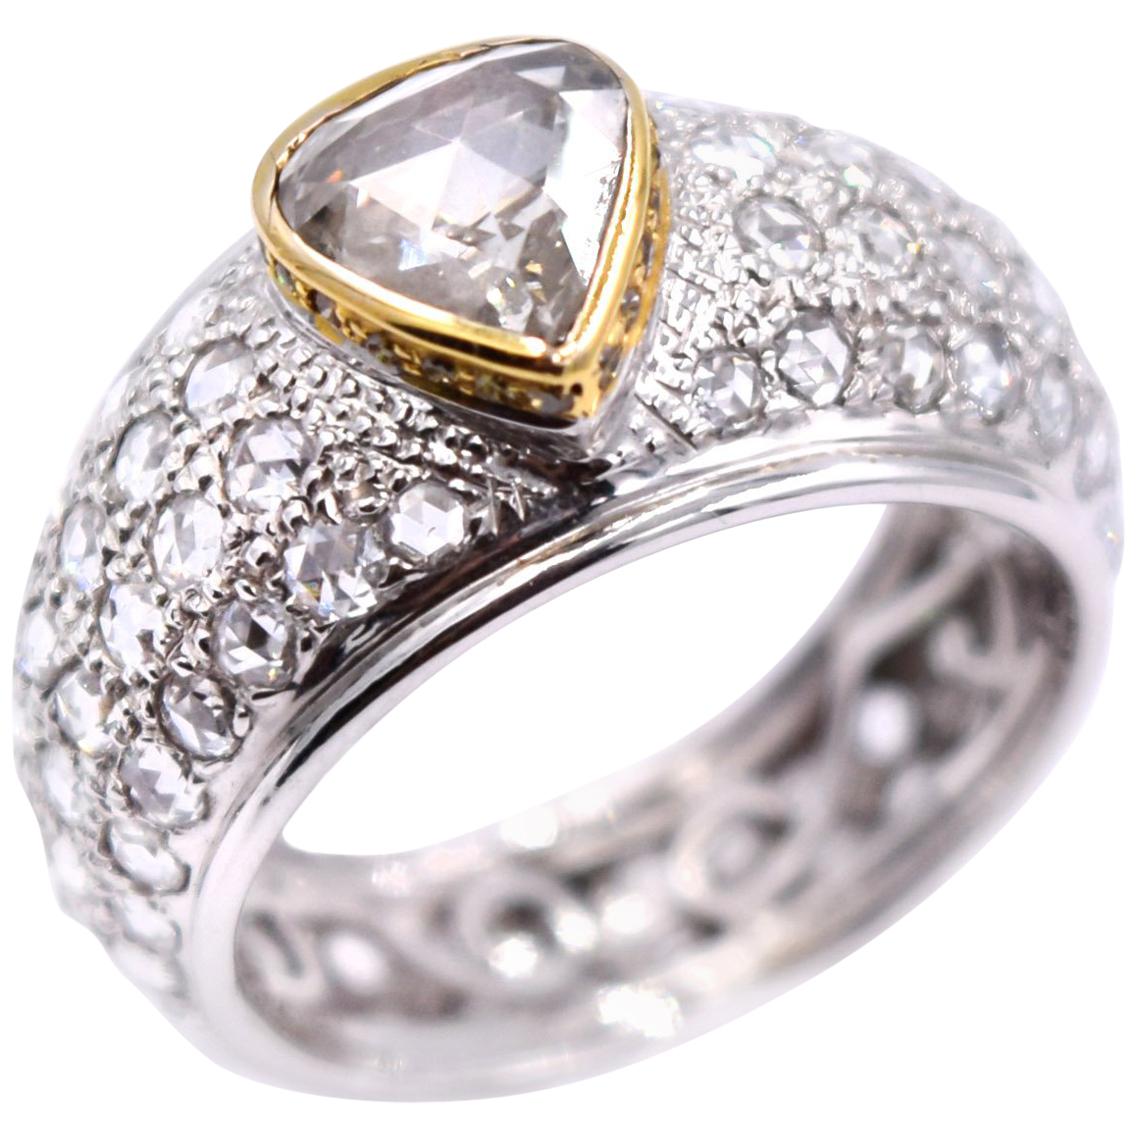 Sethi Couture 3.13 Carat Rose Cut Diamond Statement Ring in 18 Karat White Gold For Sale